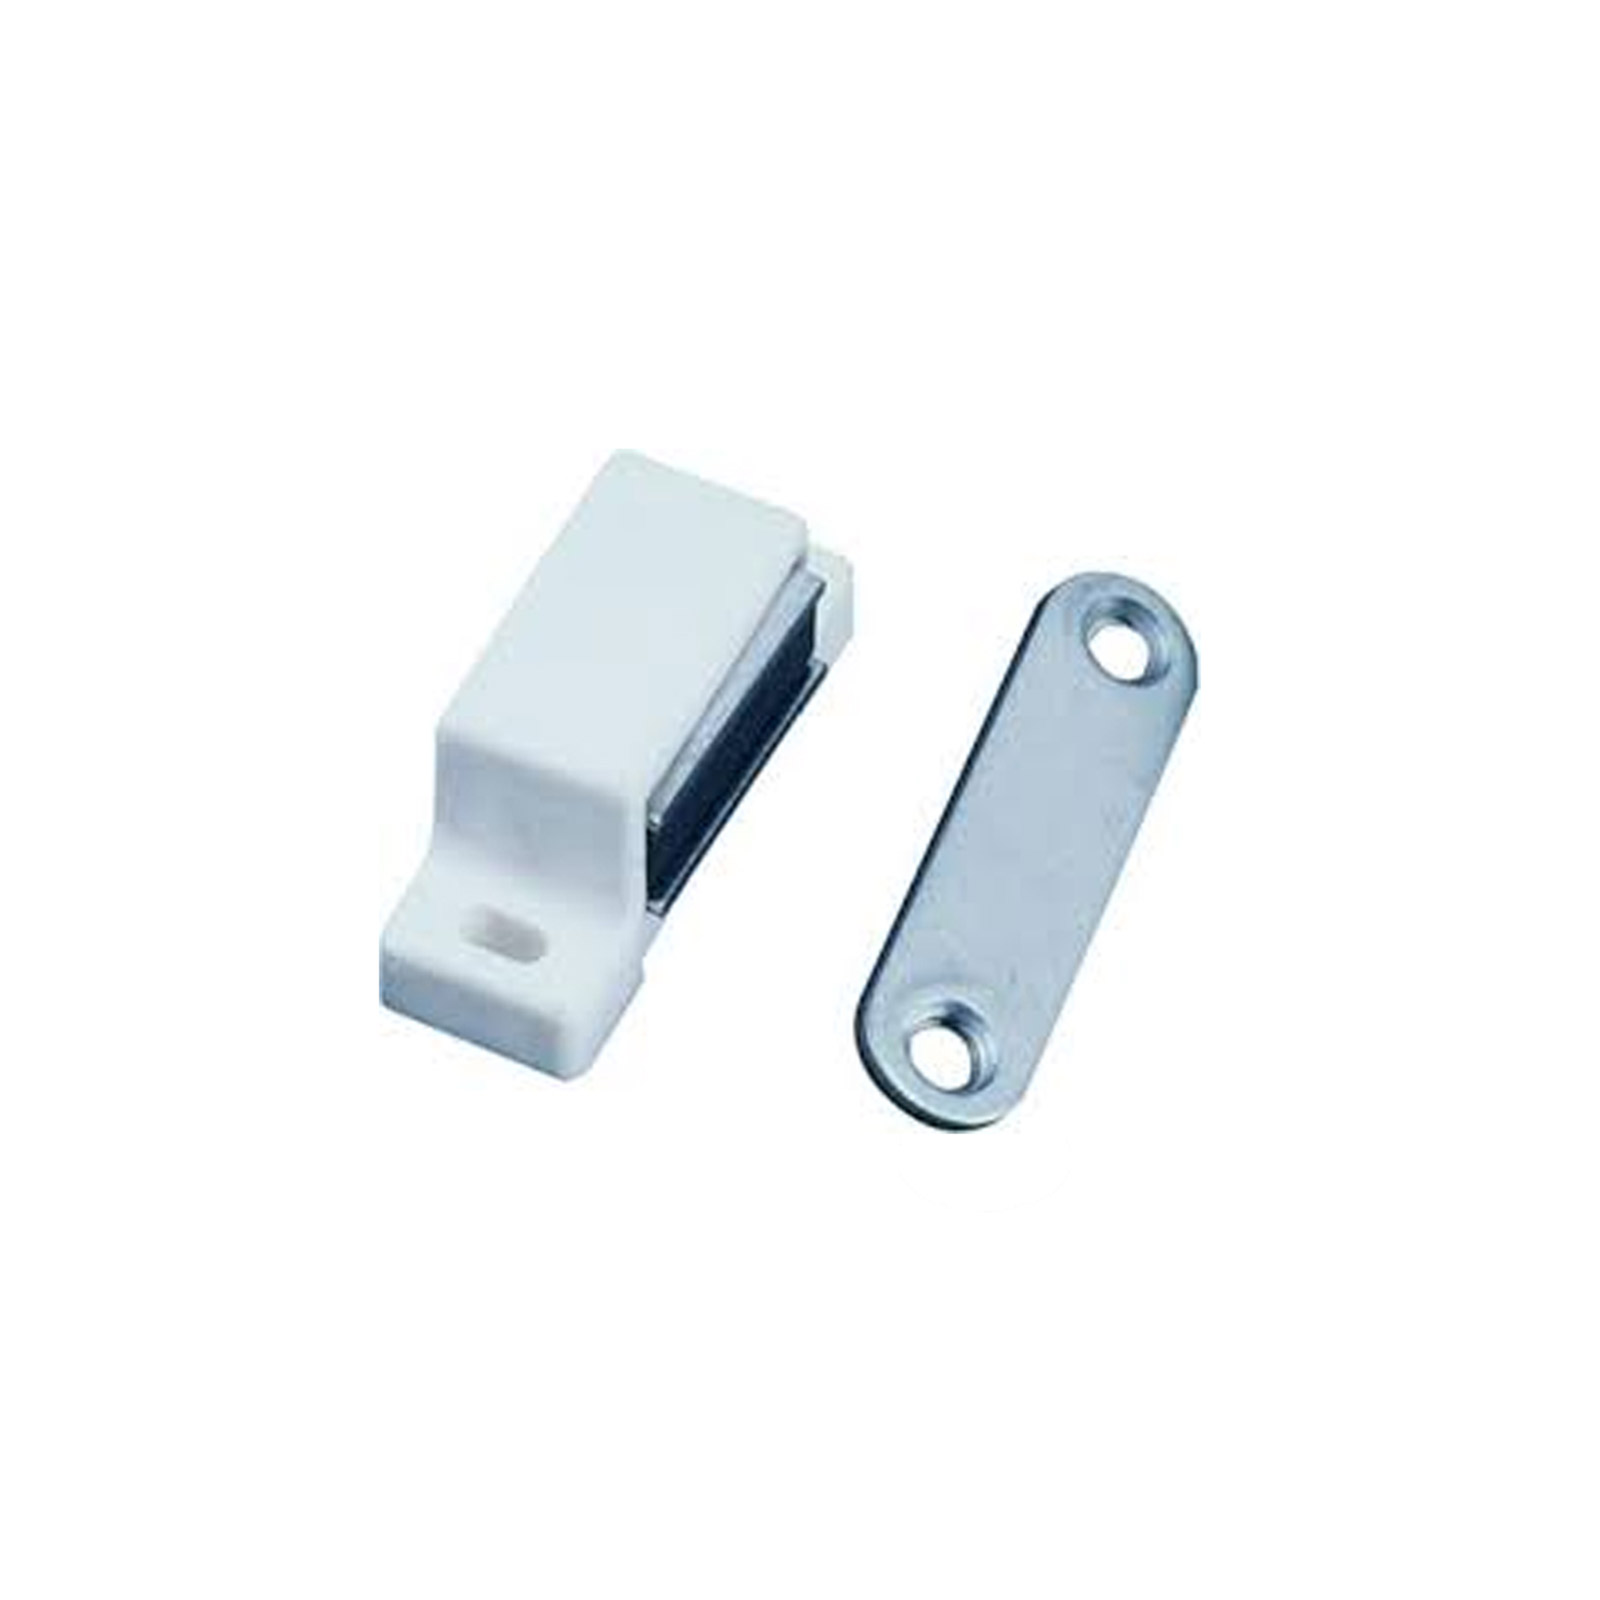 Magnetschnäpper Kunststoff Weiß Möbelmagnet für Wohnwagen Wohnmobil Schränke